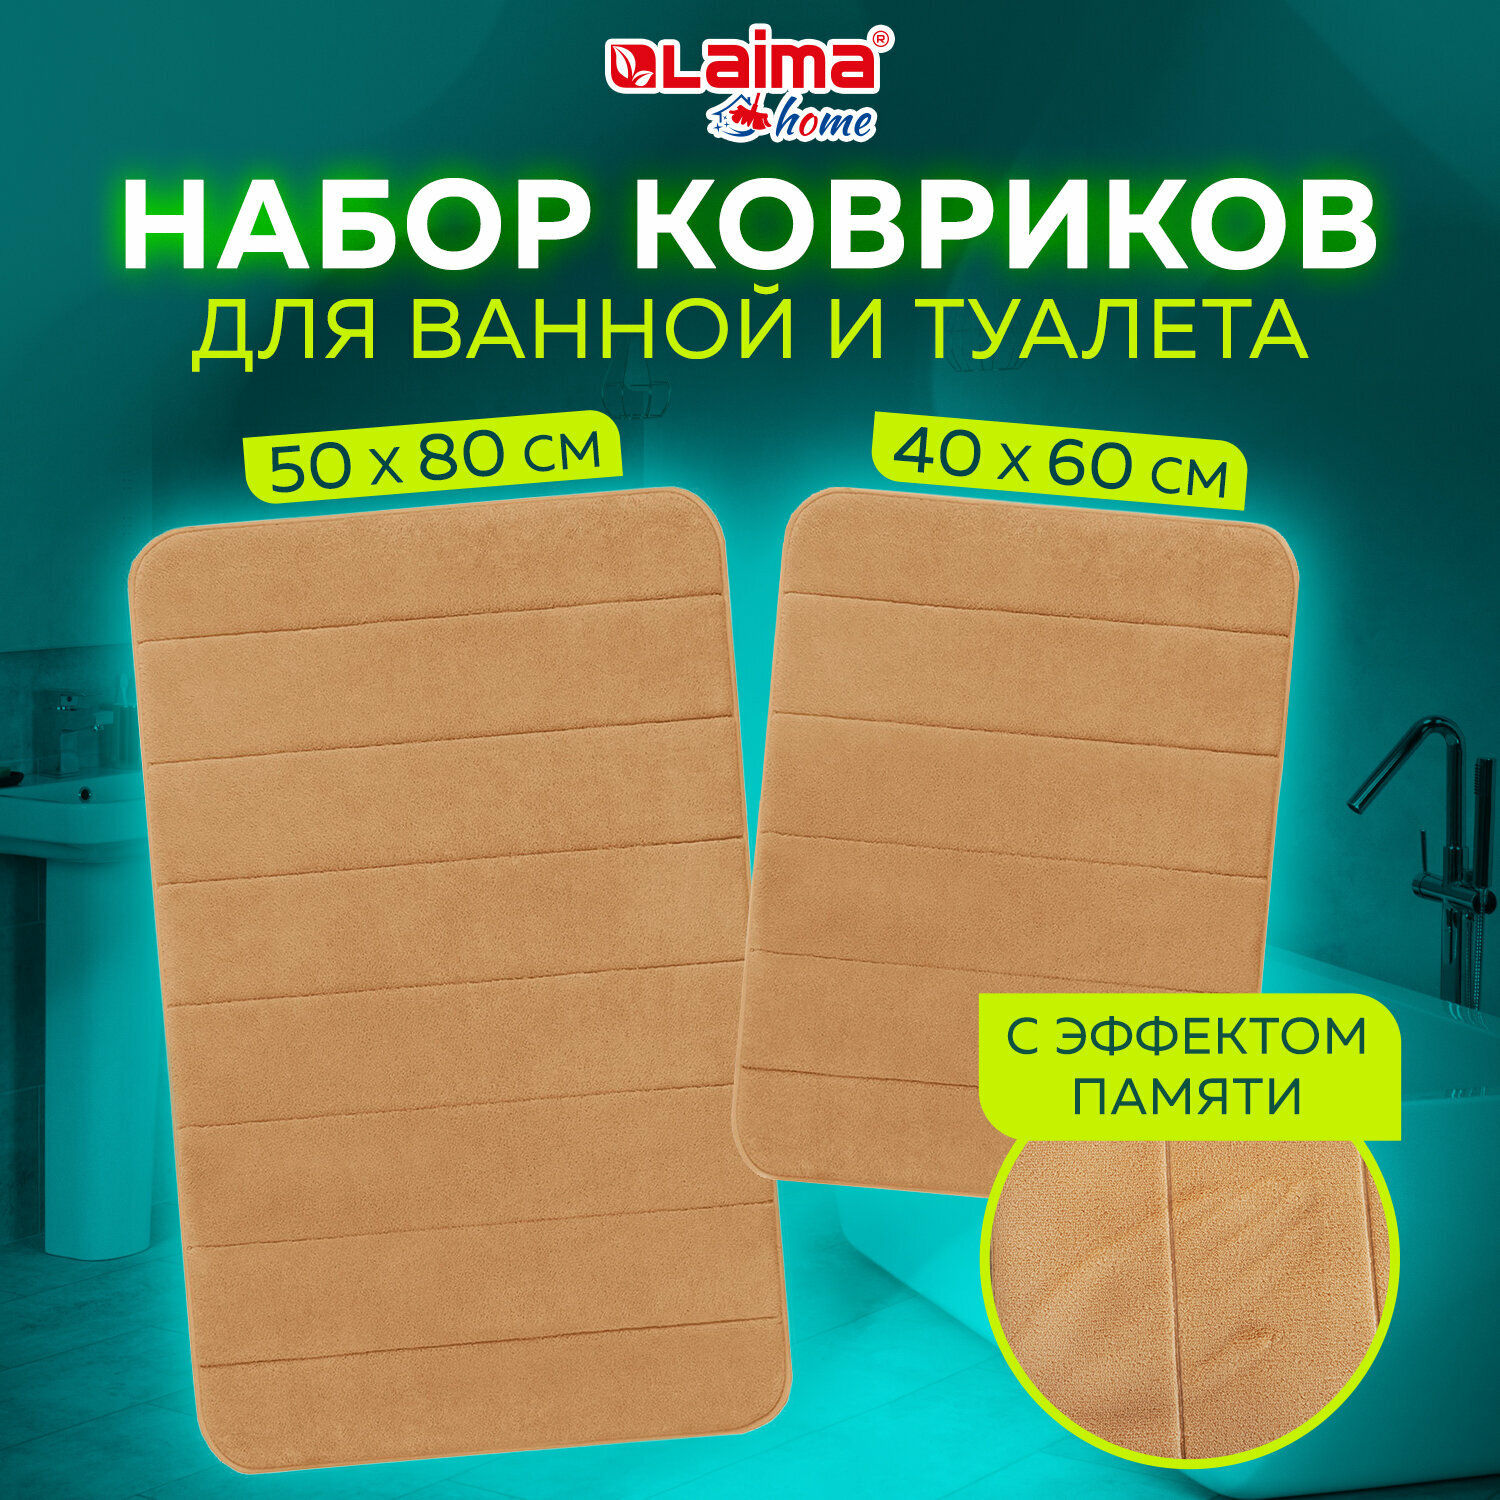 Комплект ковриков Memory Effect для ванной 50*80см и туалета 40*60см, персиковый, Laima Home, 608447